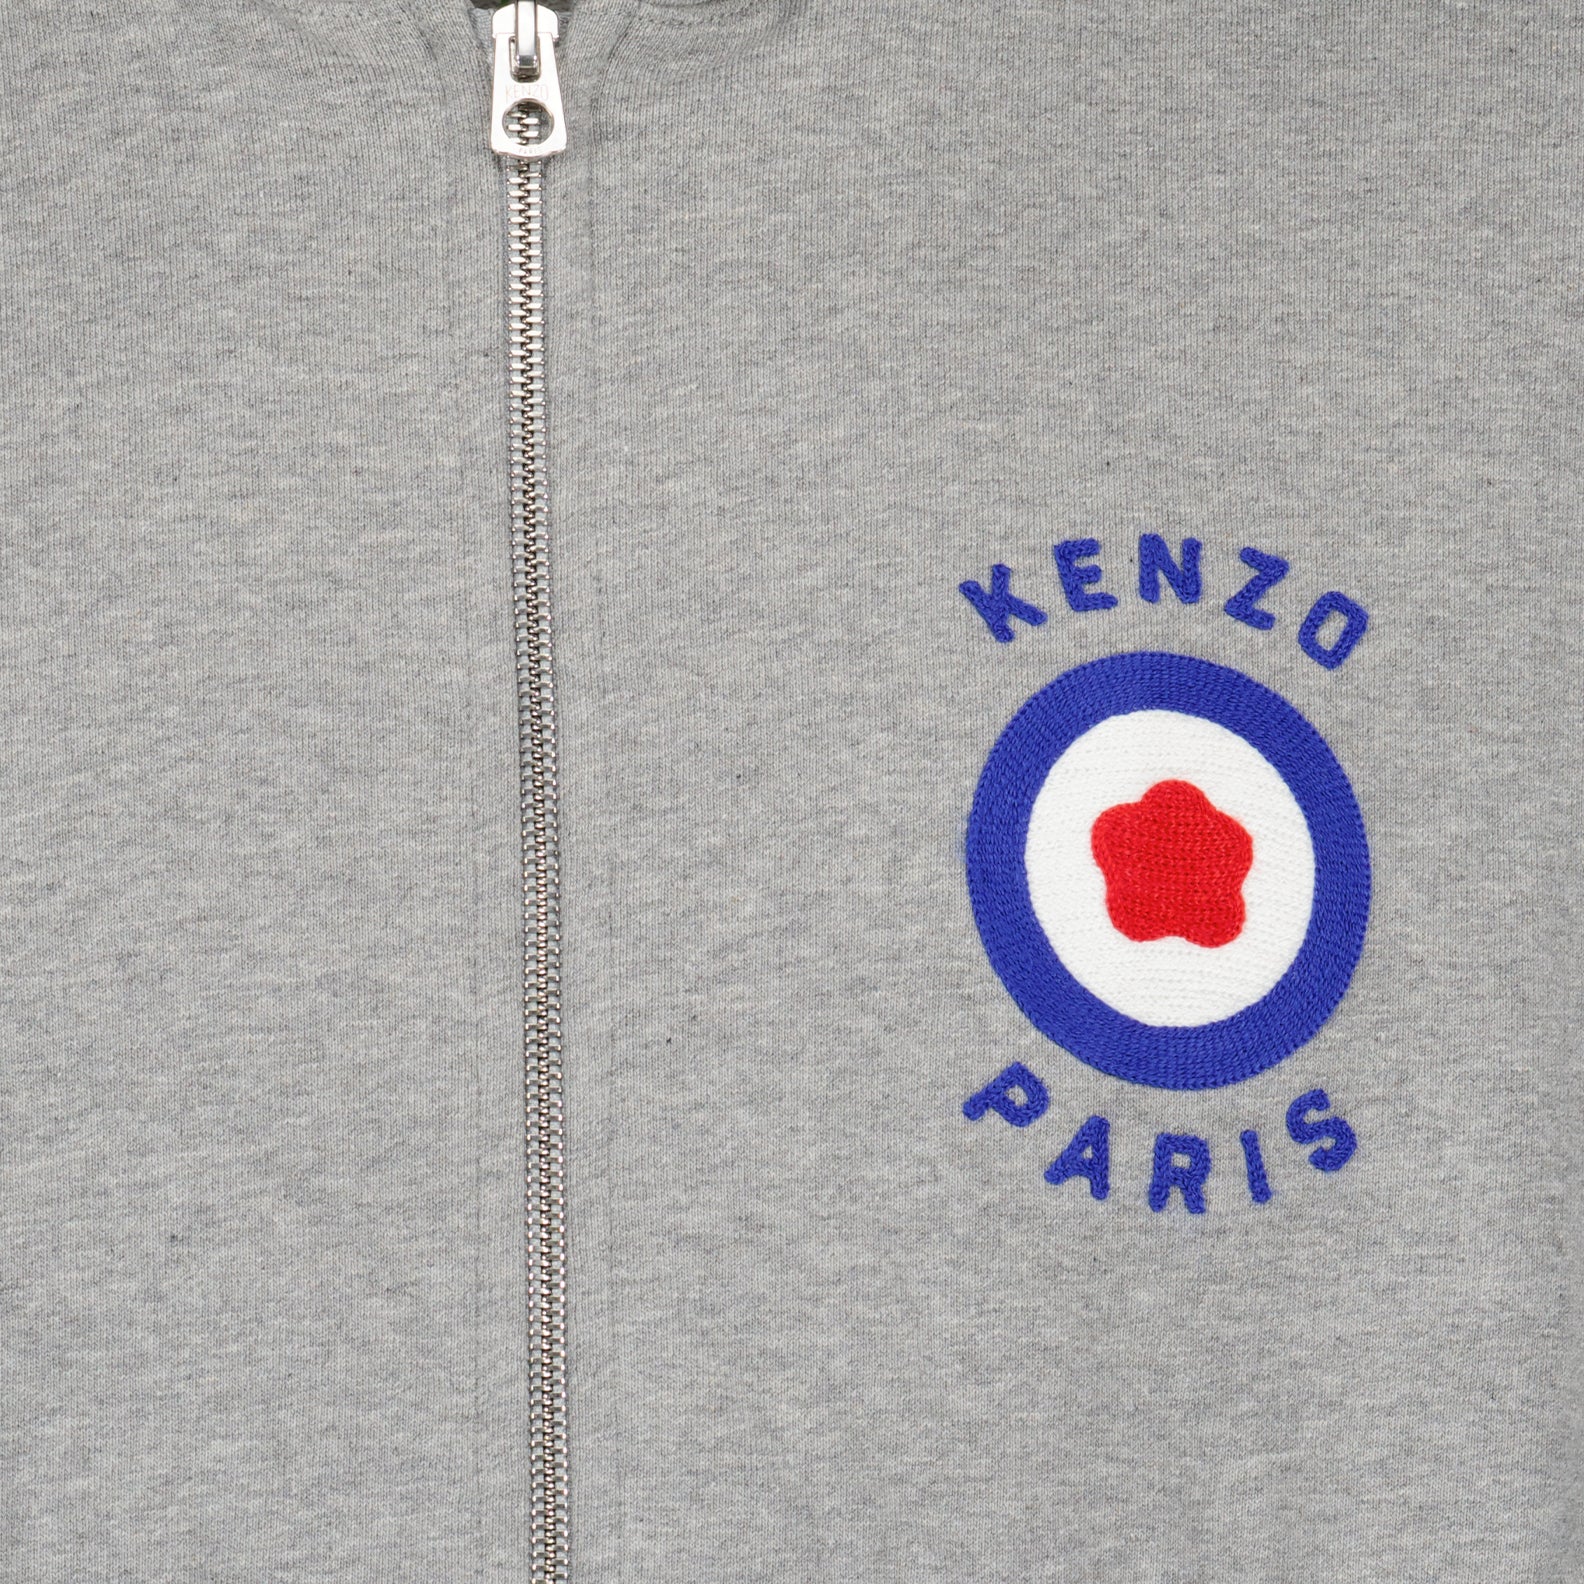 Kenzo Target zipped sweatshirt